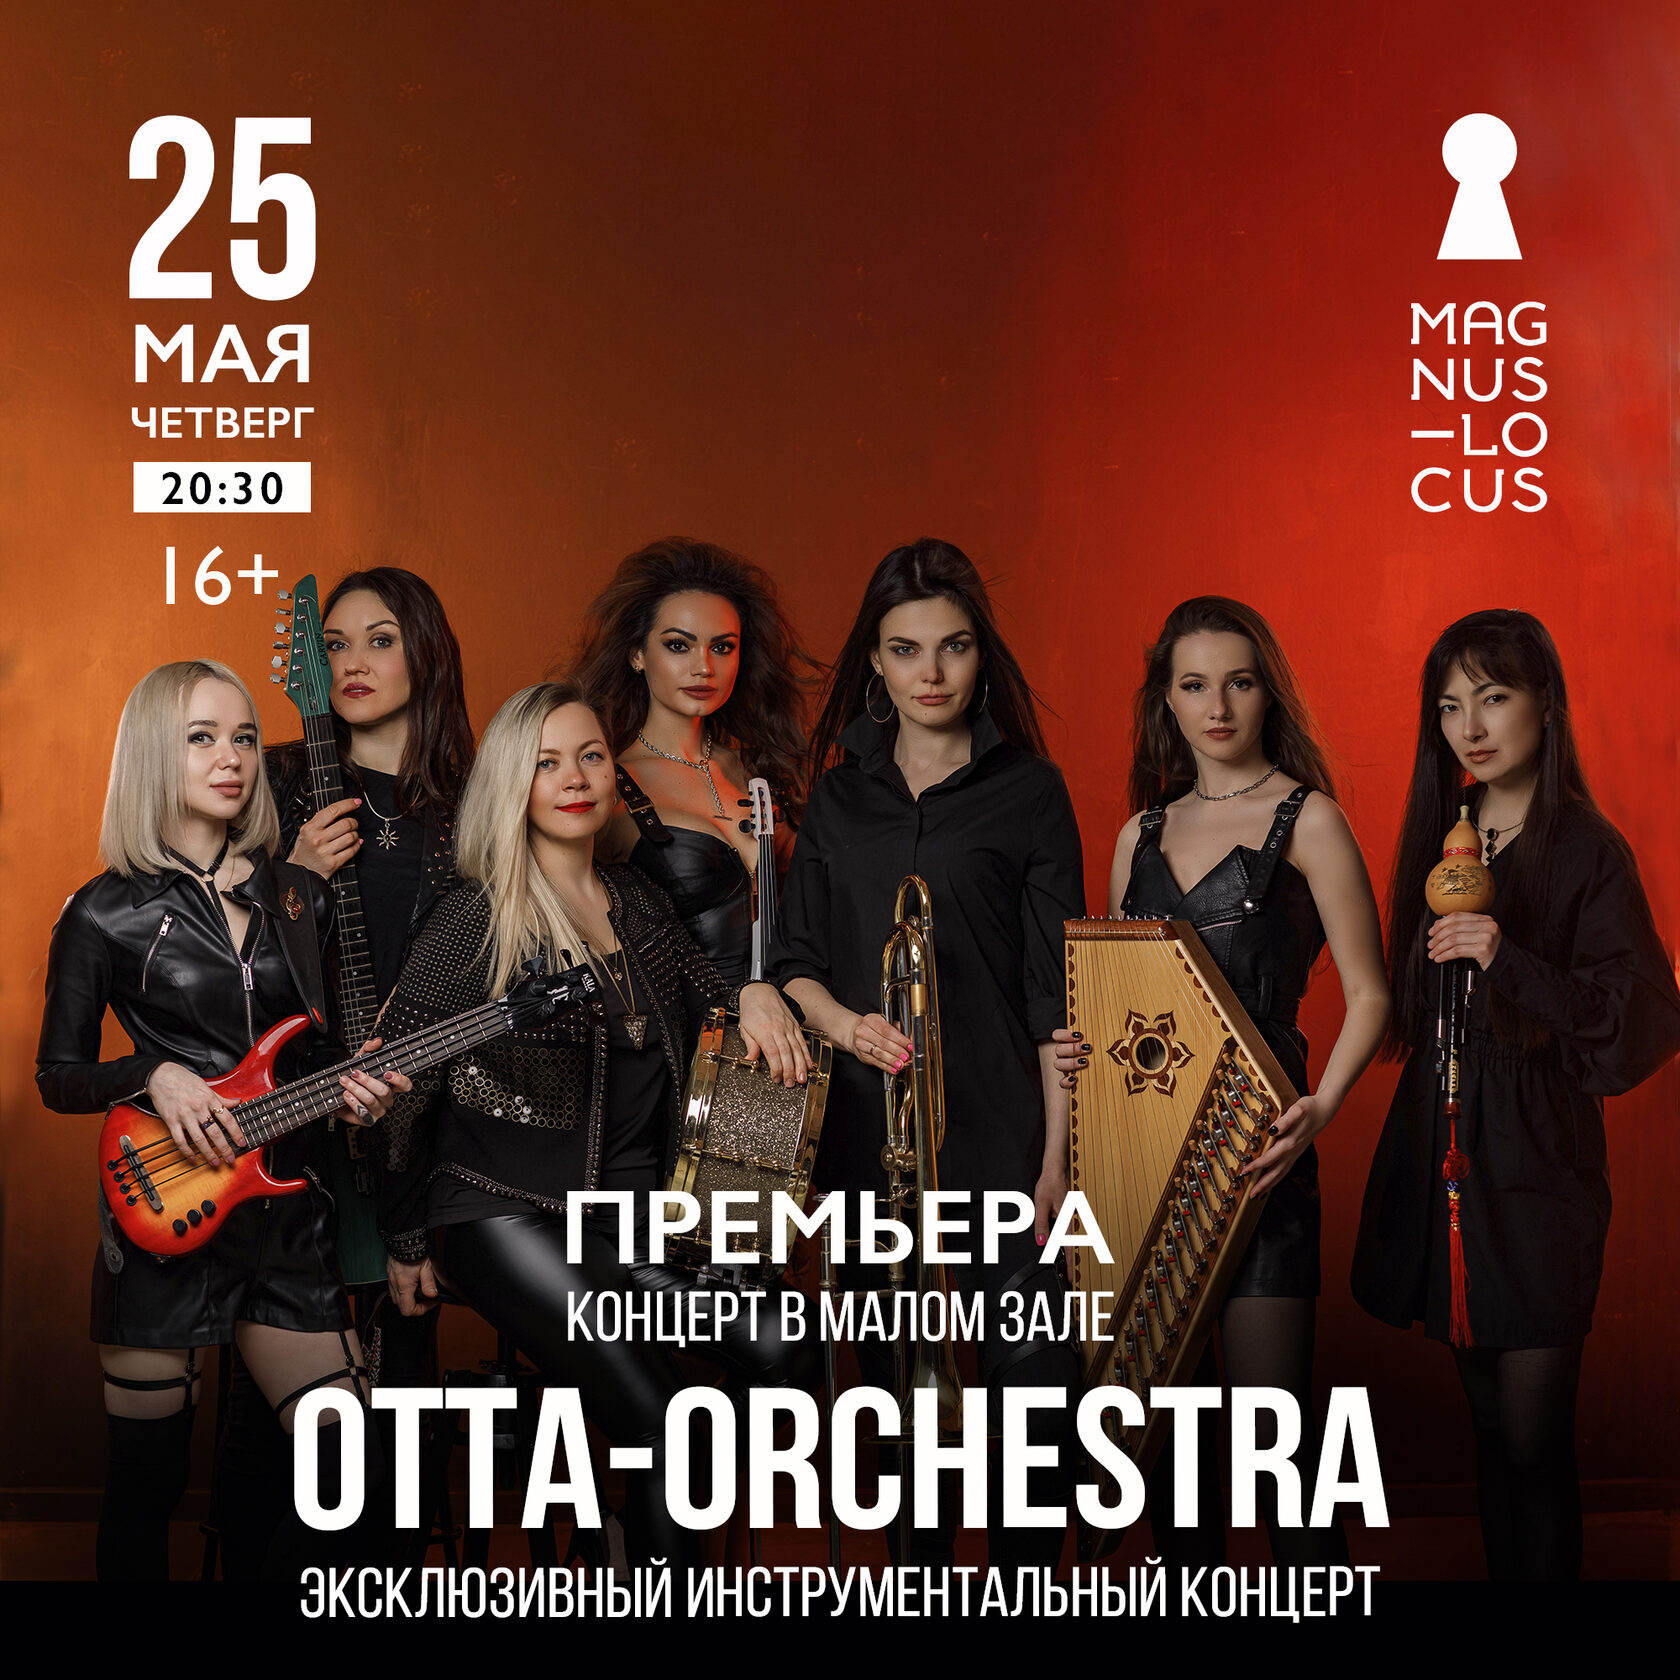 OTTA-orchestra Эксклюзивный инструментальный концерт